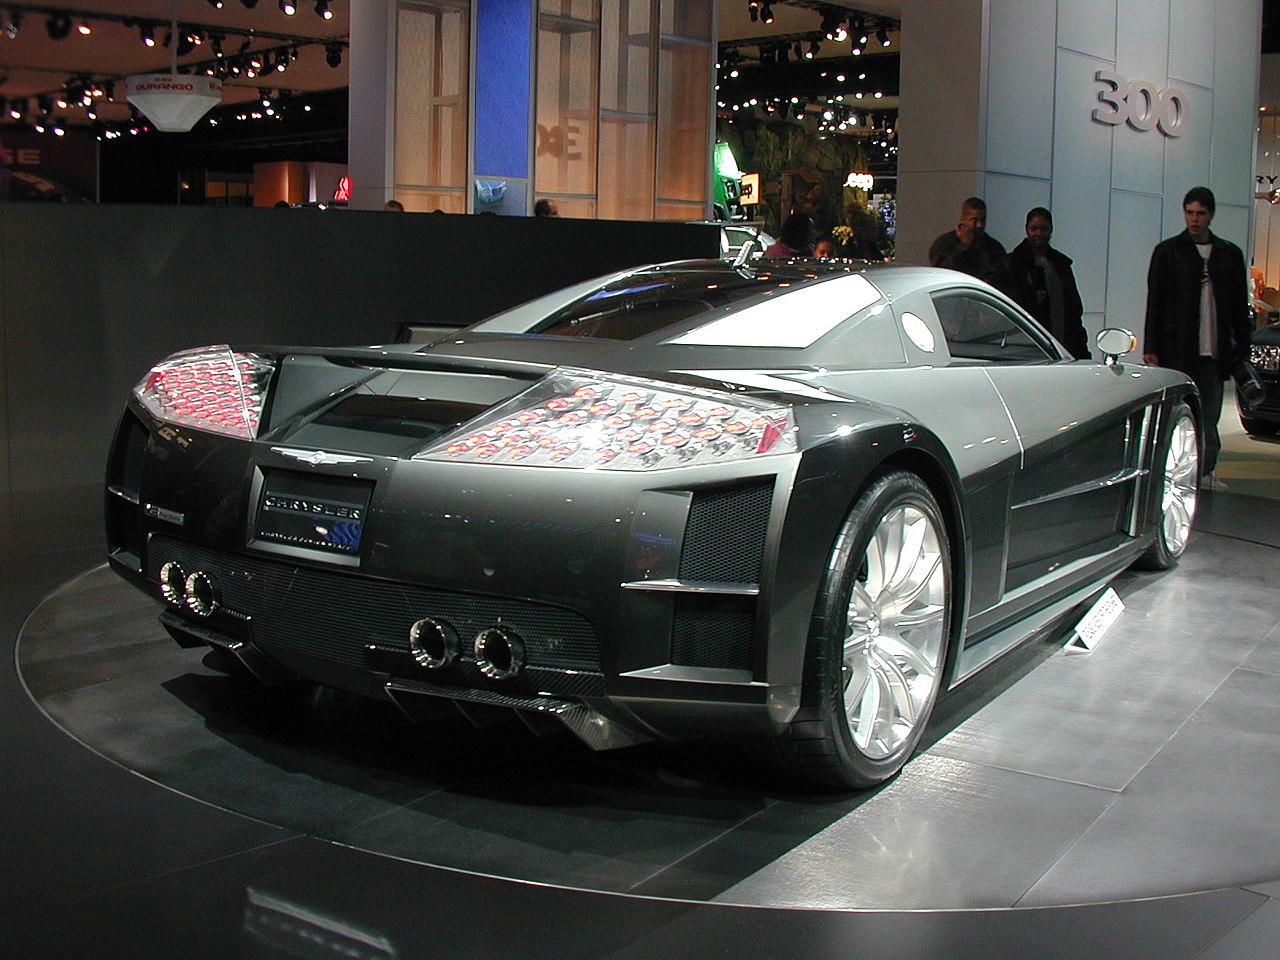 Chrysler_ME-412_Concept_rear.jpg